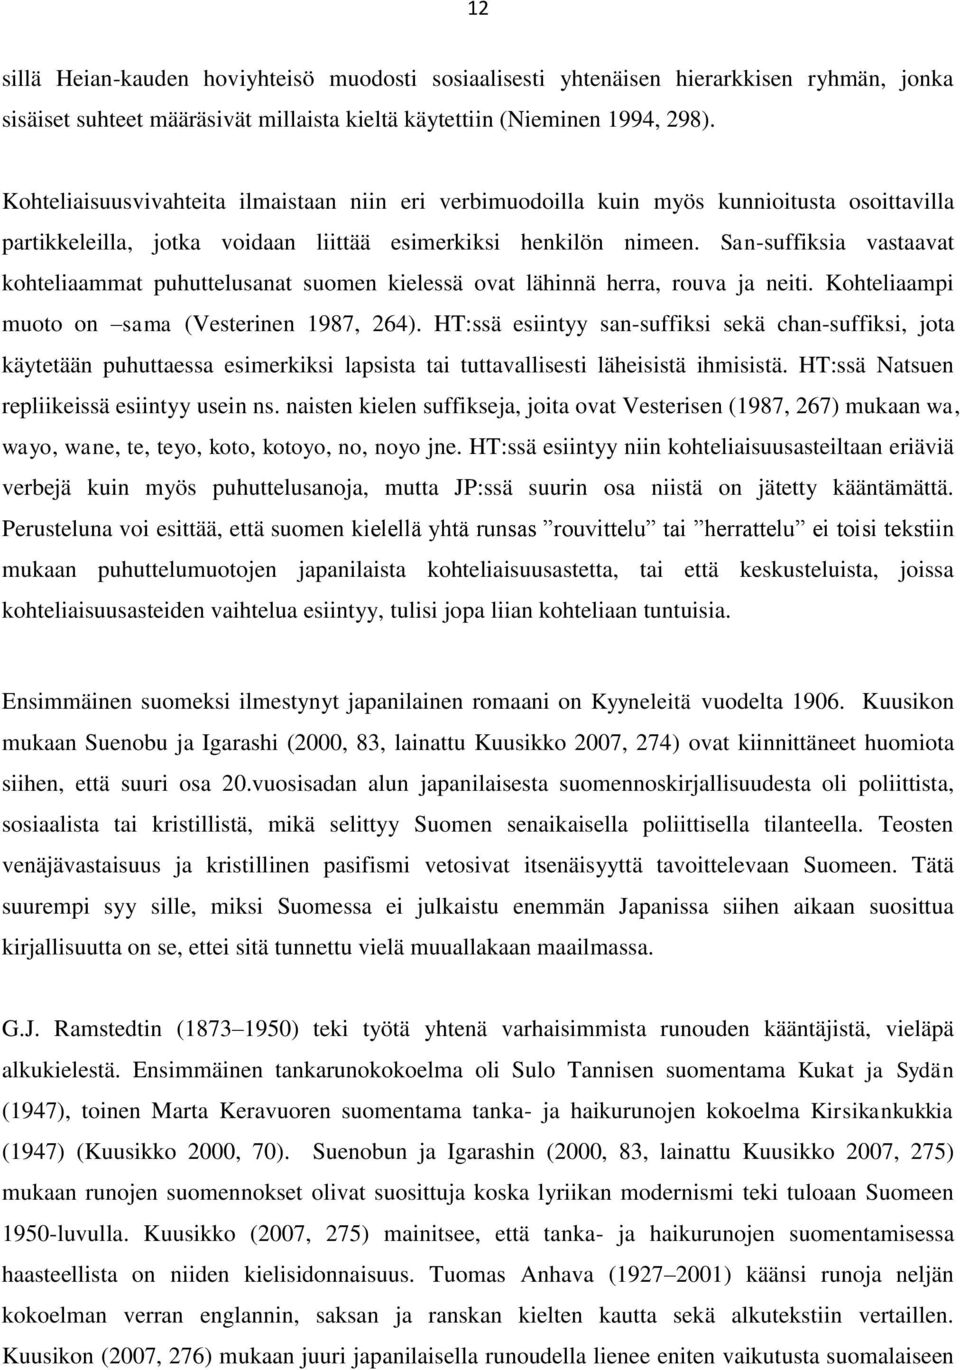 San-suffiksia vastaavat kohteliaammat puhuttelusanat suomen kielessä ovat lähinnä herra, rouva ja neiti. Kohteliaampi muoto on sama (Vesterinen 1987, 264).